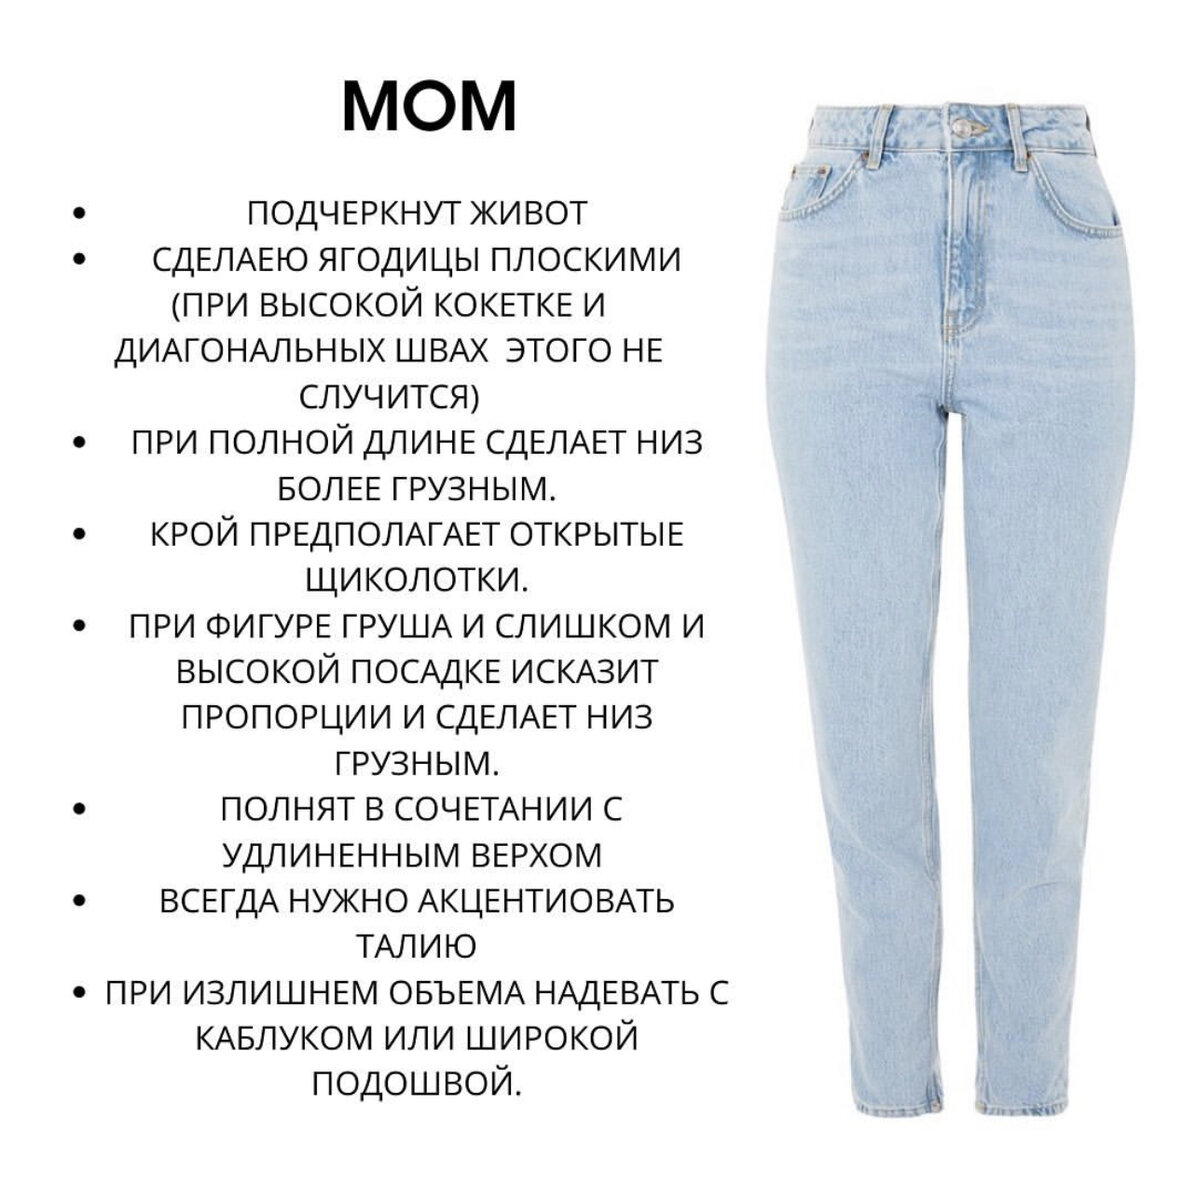  Mom джинсы стали самой любимой моделью для многих девушек, а как их выбрать и носить? Как выбрать модель чтобы ягодницы не казались плоскими, и живот не выпирал.